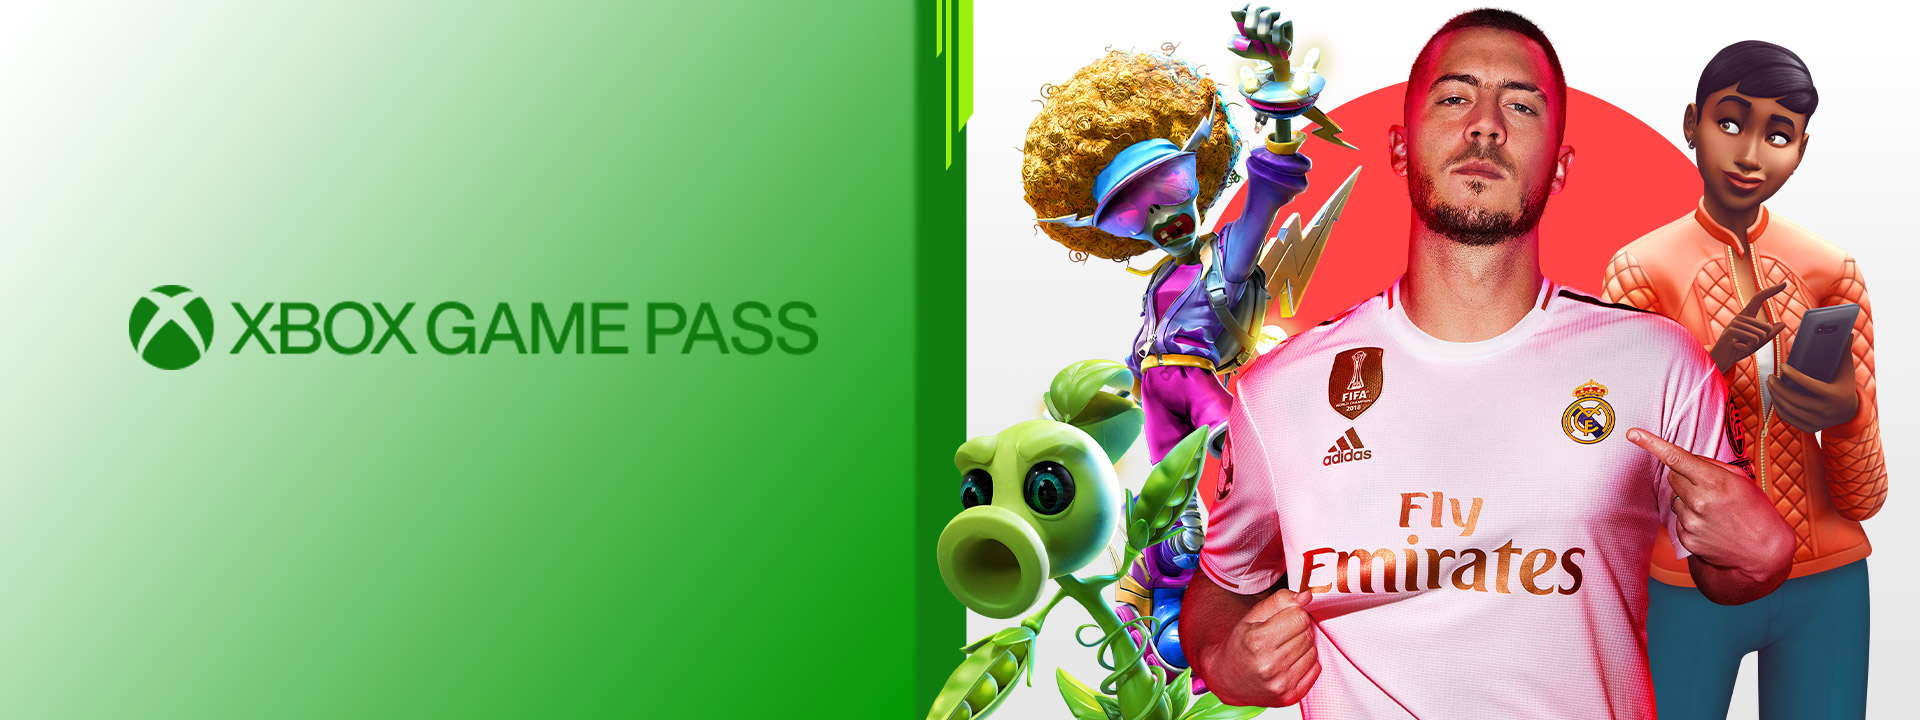 Xbox-Game-Pass-exc.jpg